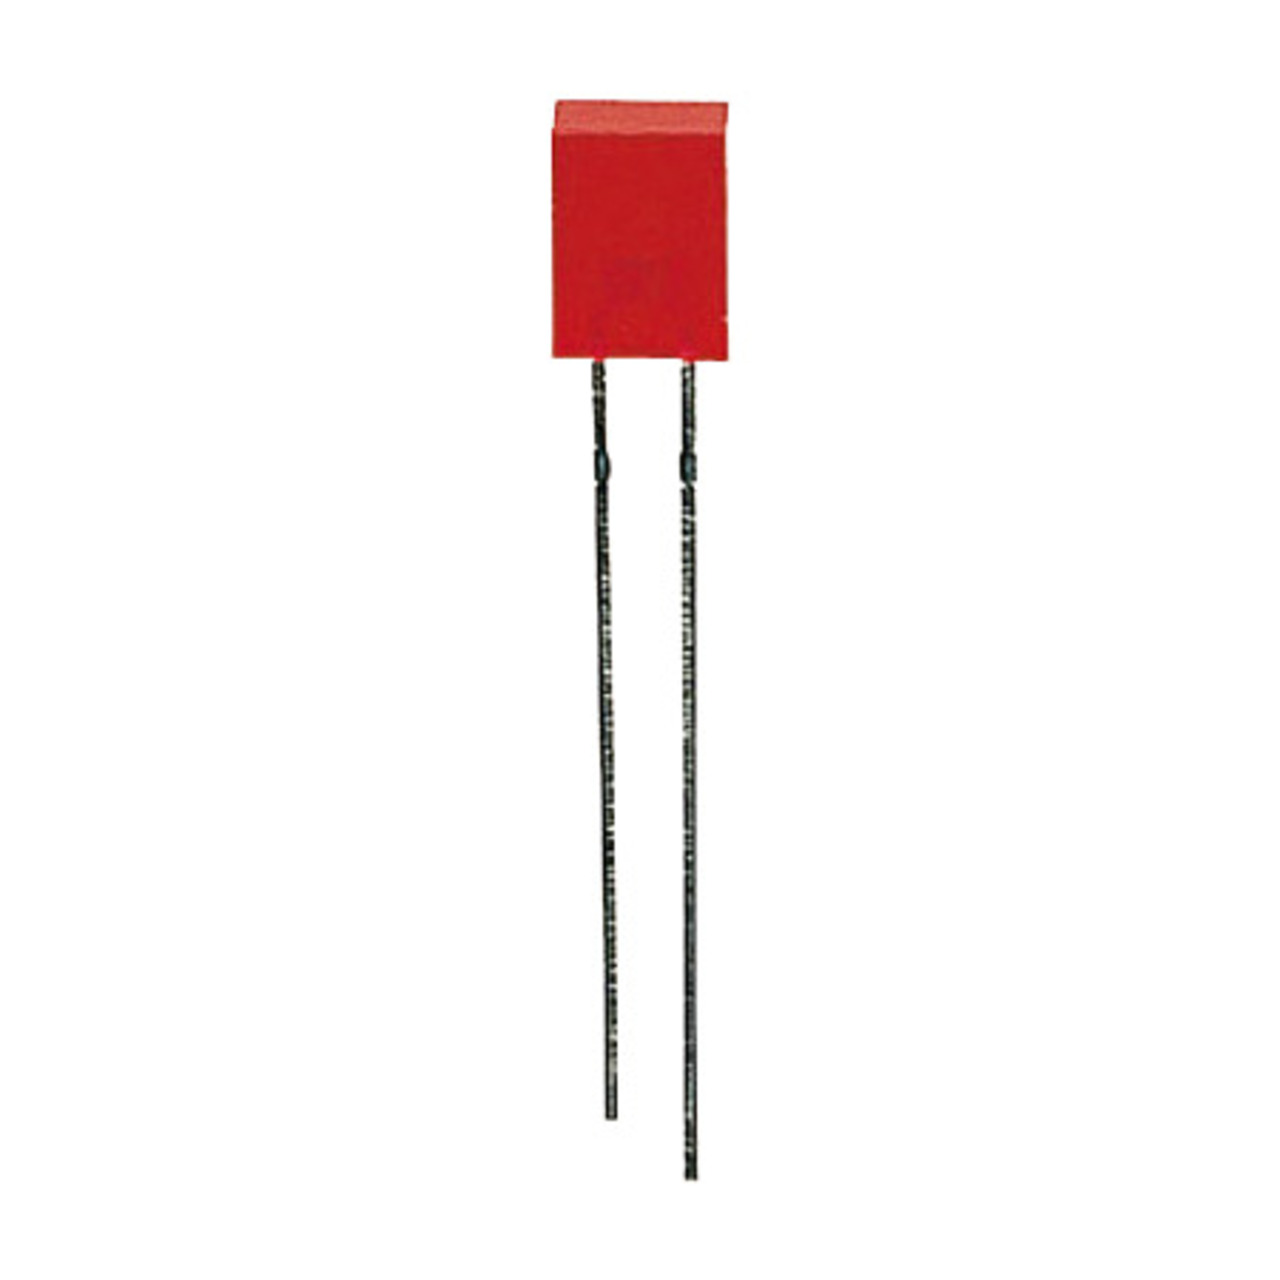 10x LED Rechteck 2 x 5 mm- Rot